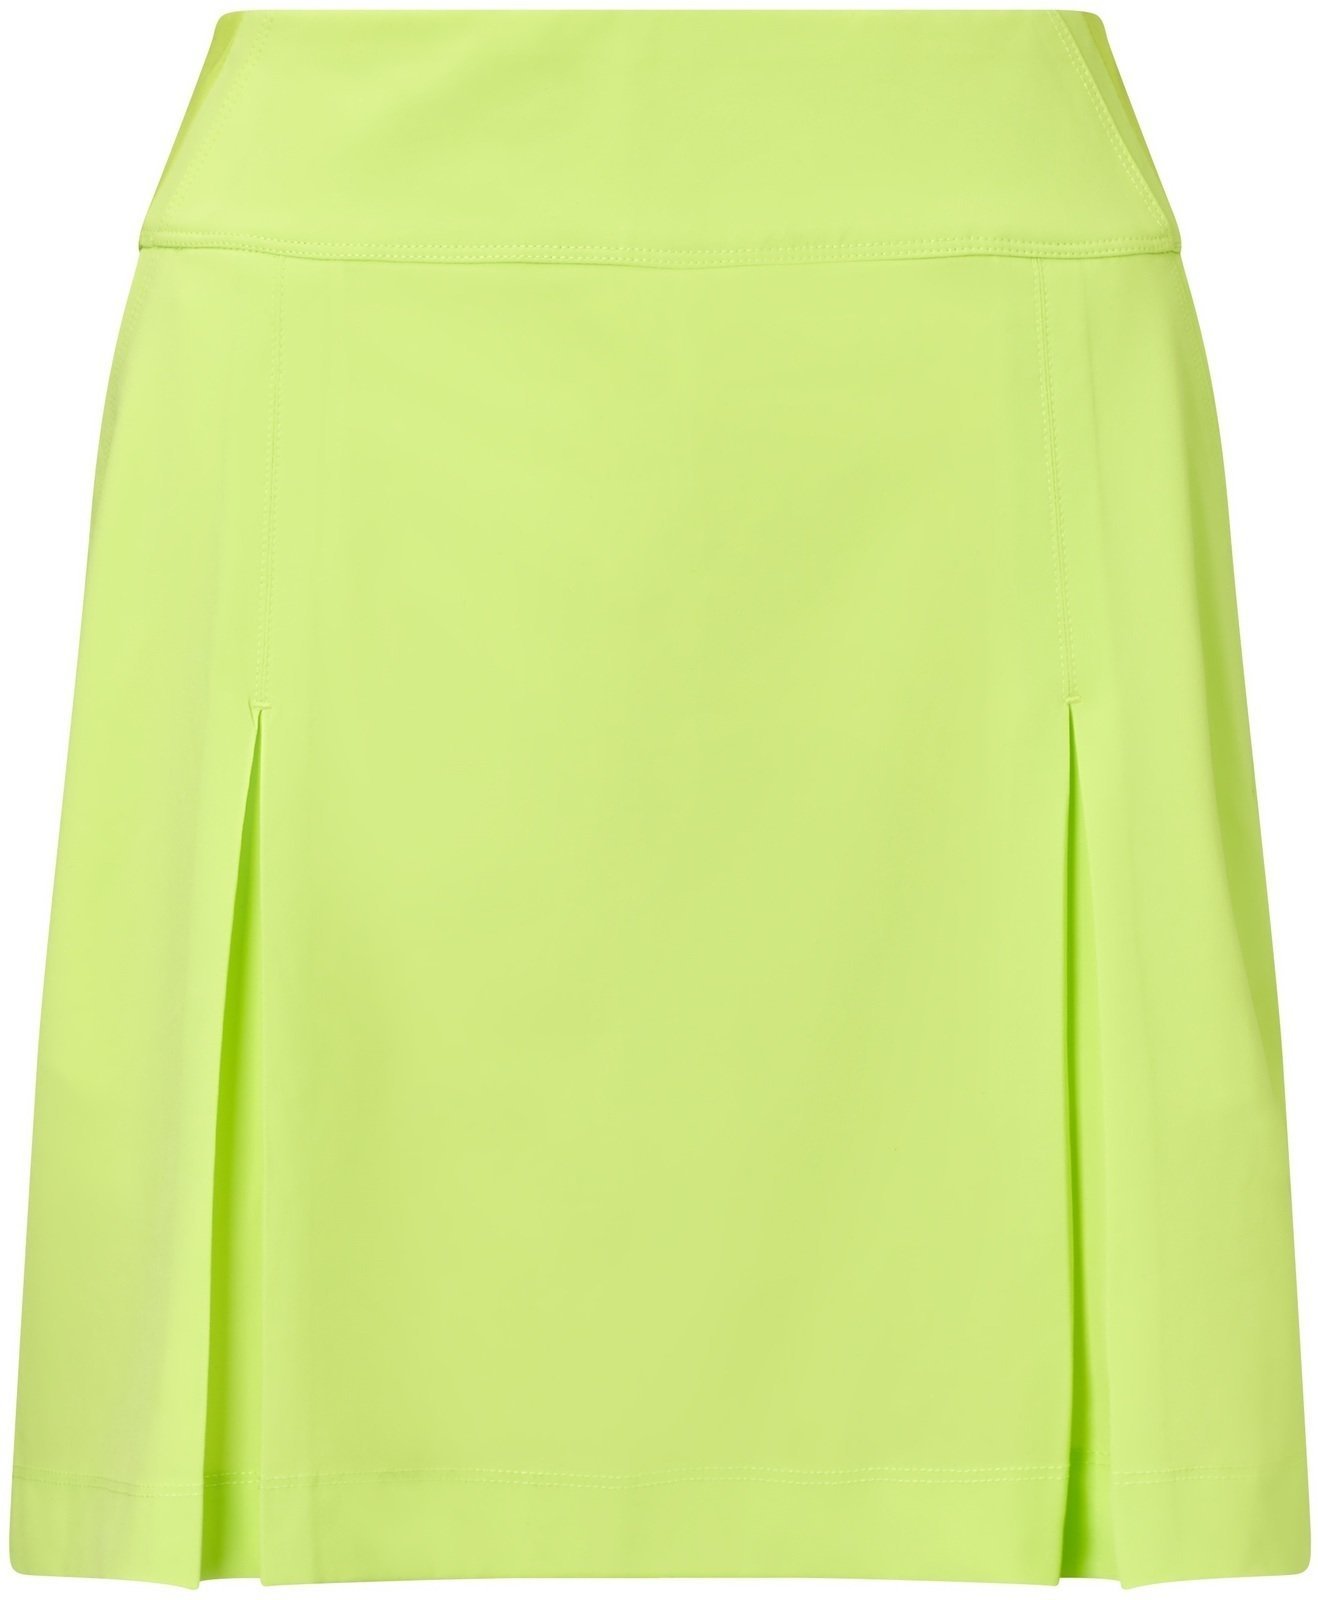 Skirt / Dress Callaway 18 All Day Skort Sharp Green XL Womens